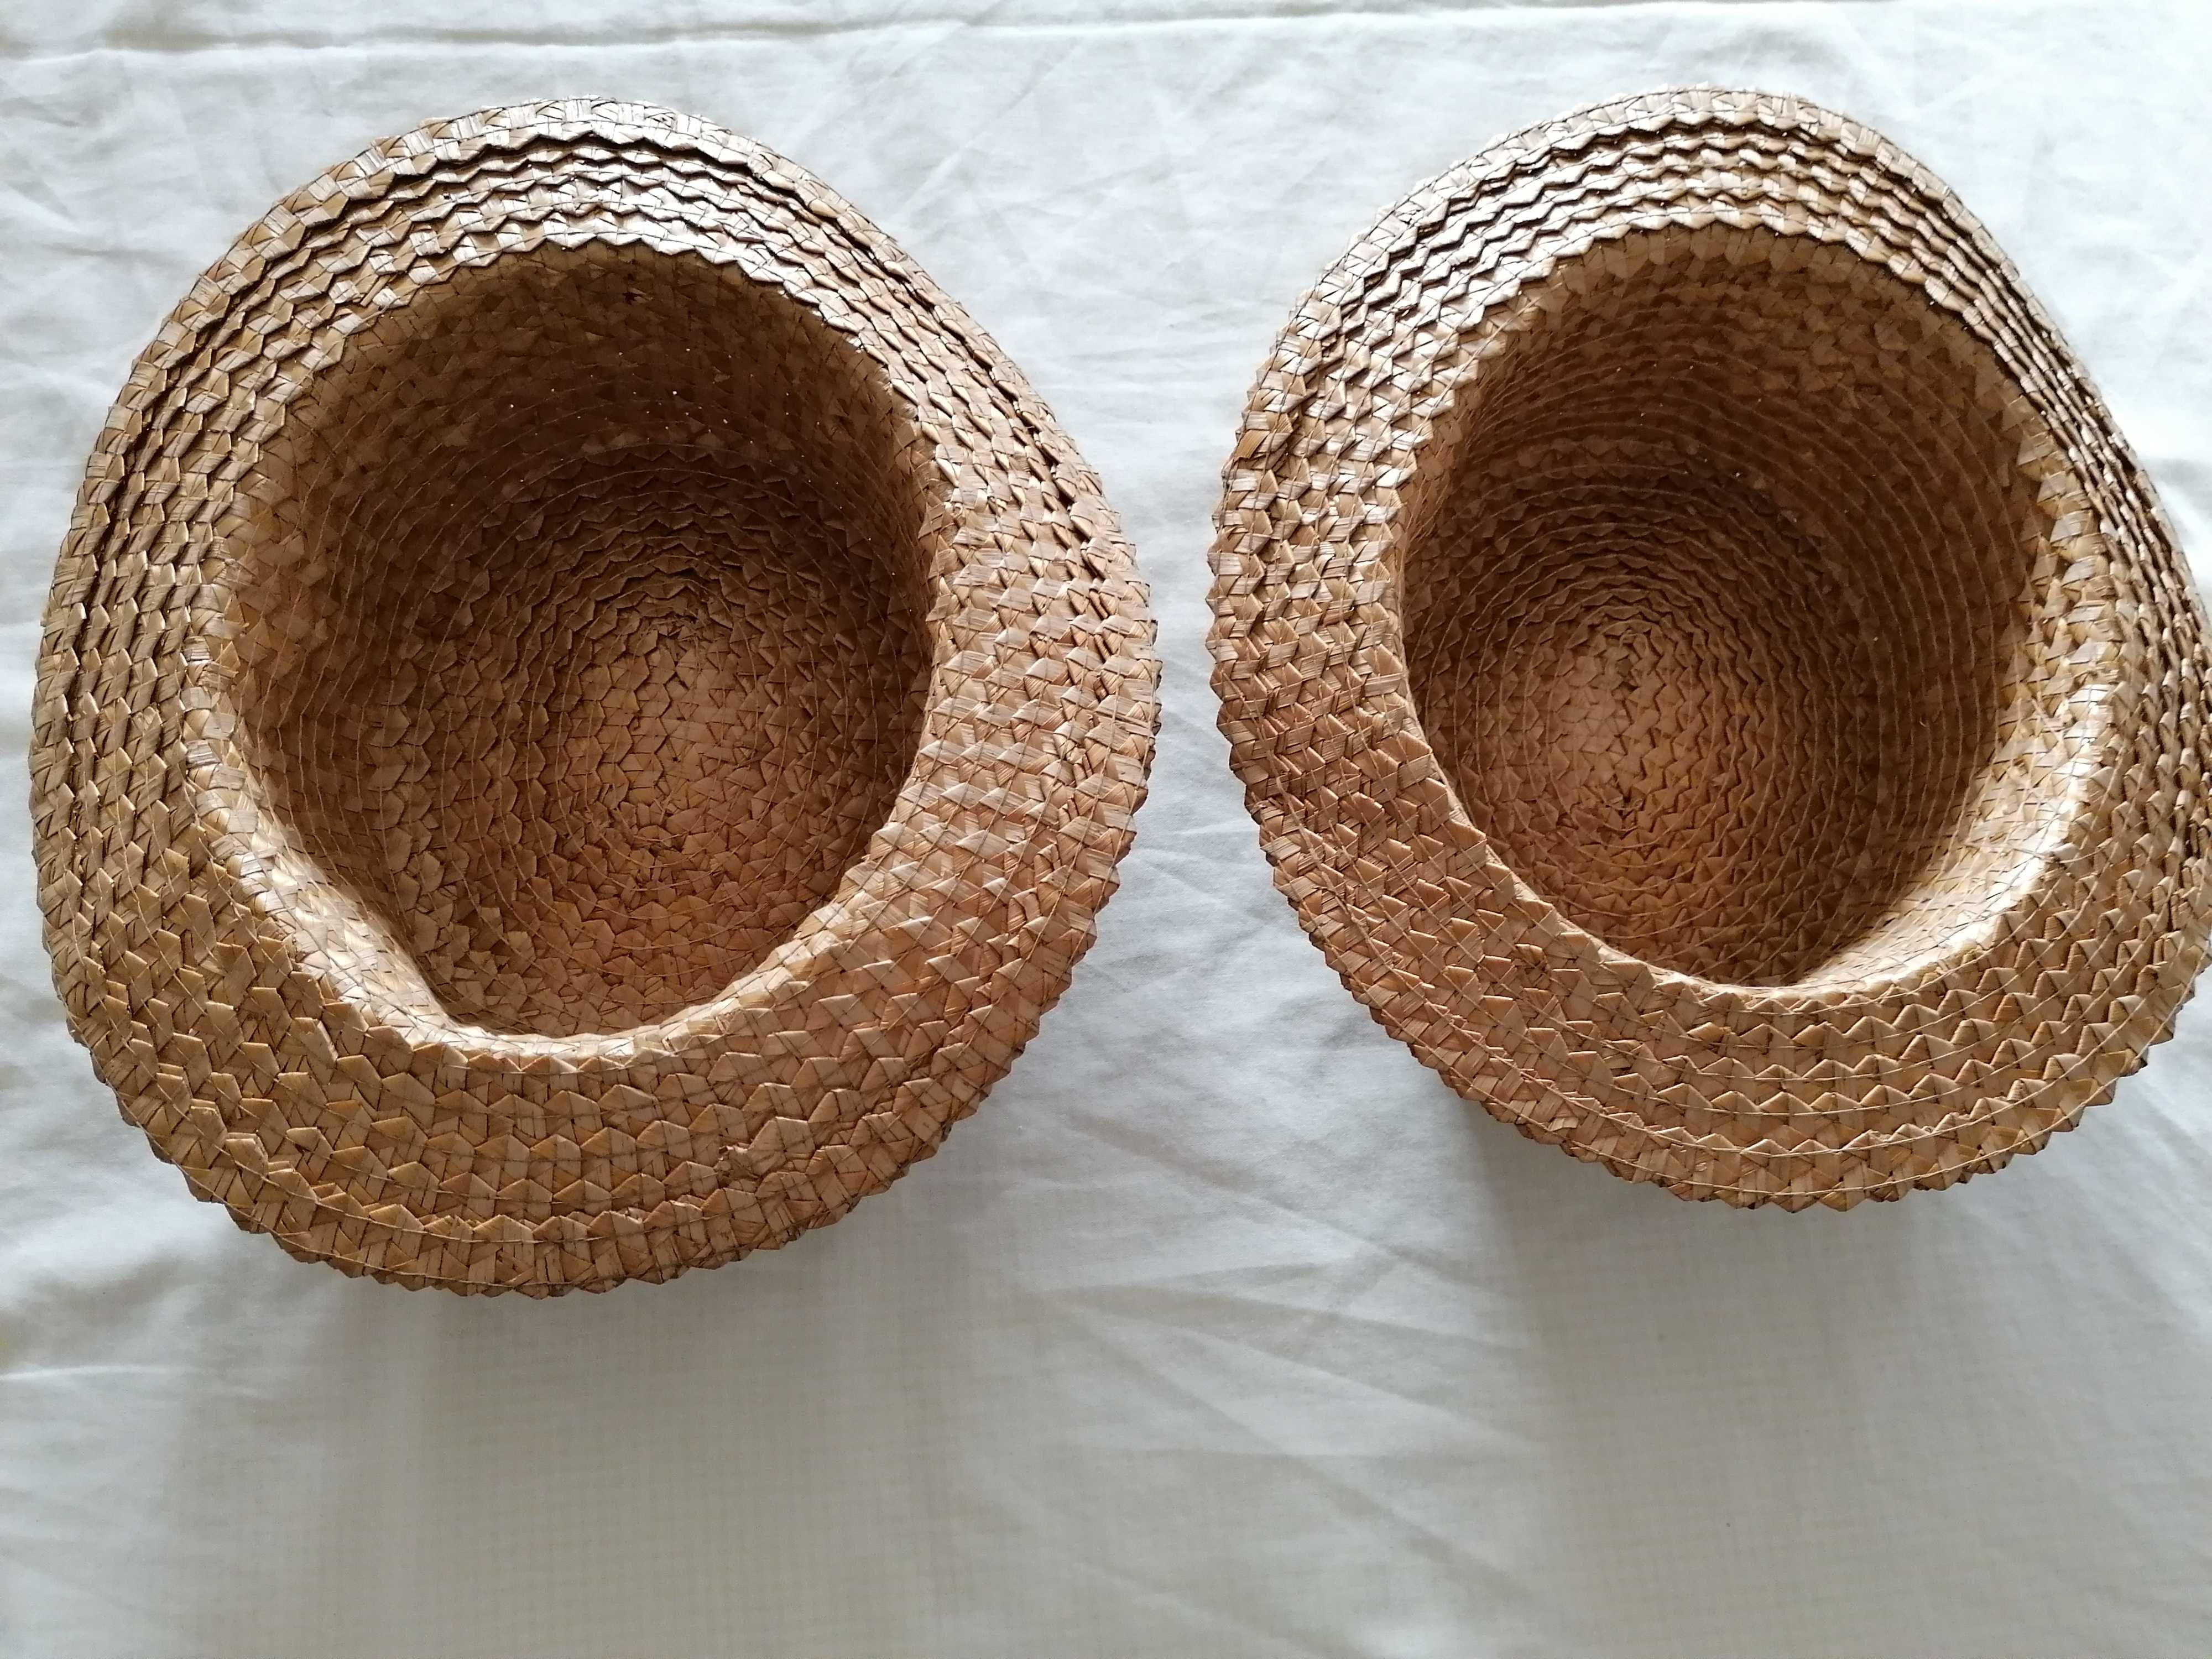 Chapéus de palha antigos da Madeira, ideal para baile máscaras